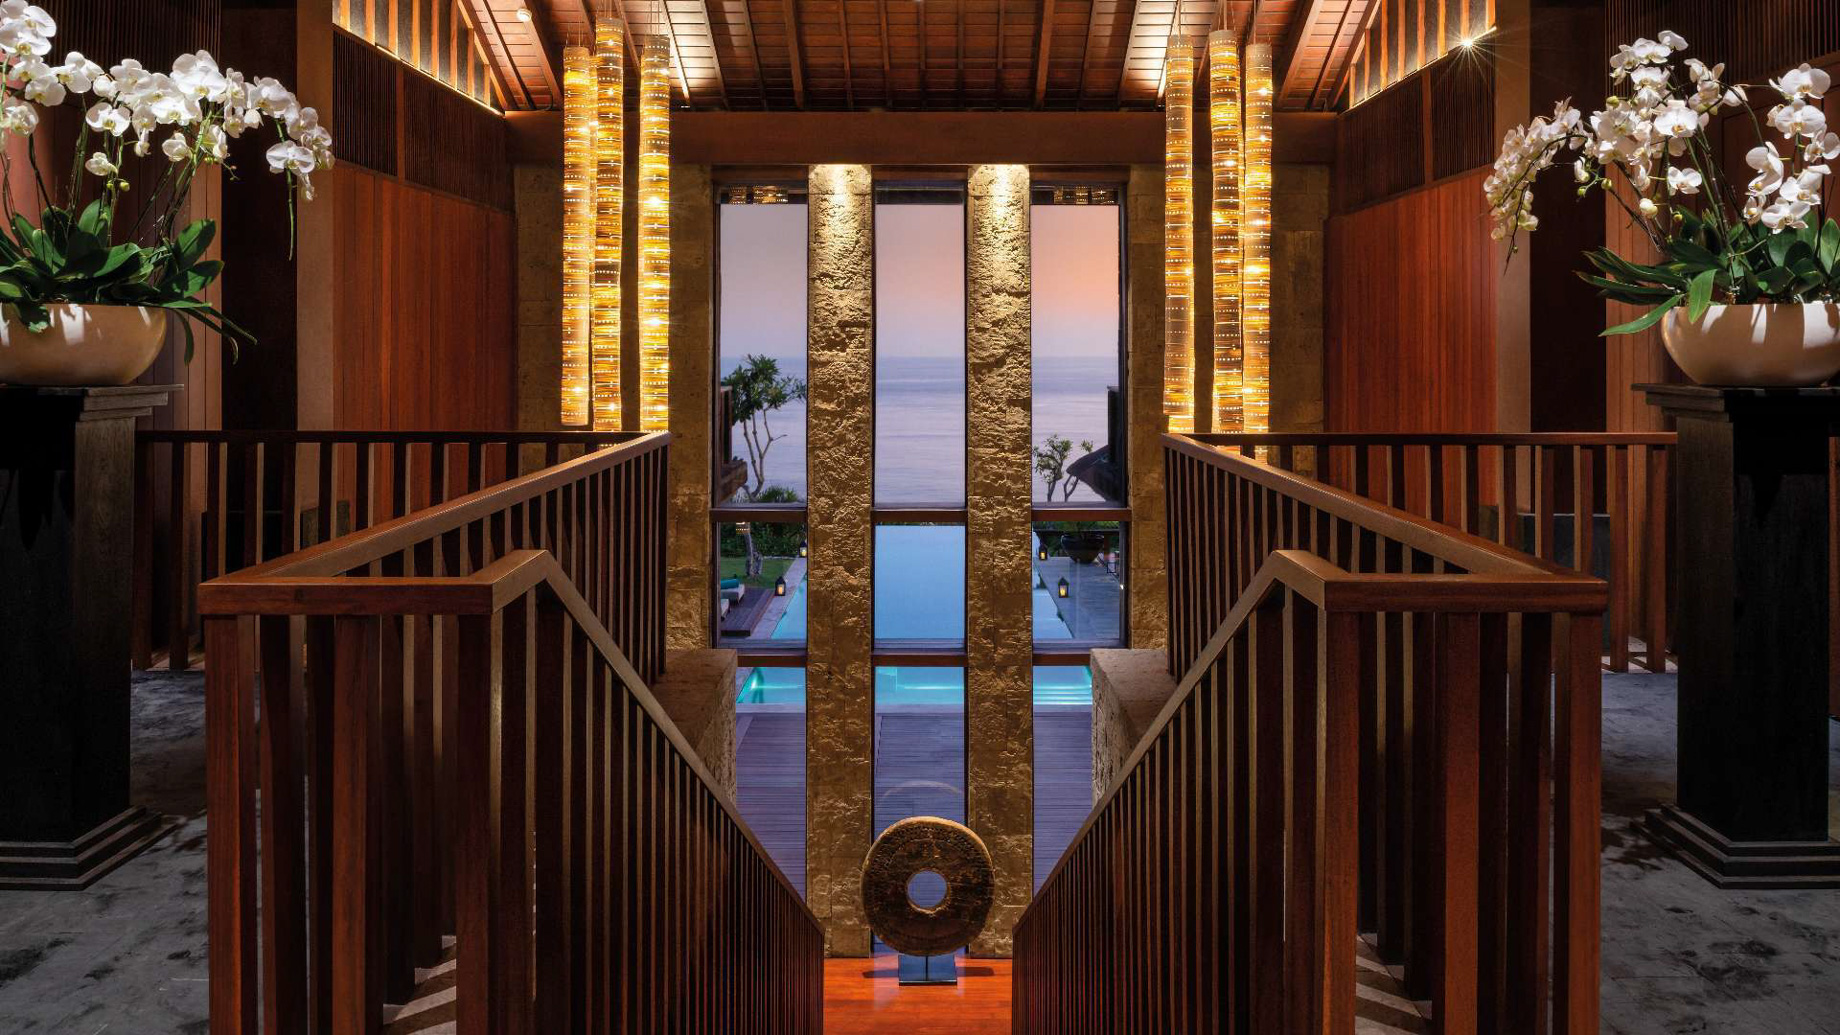 Bvlgari Resort Bali – Uluwatu, Bali, Indonesia – The Bvlgari Villa Interior Pool View Night